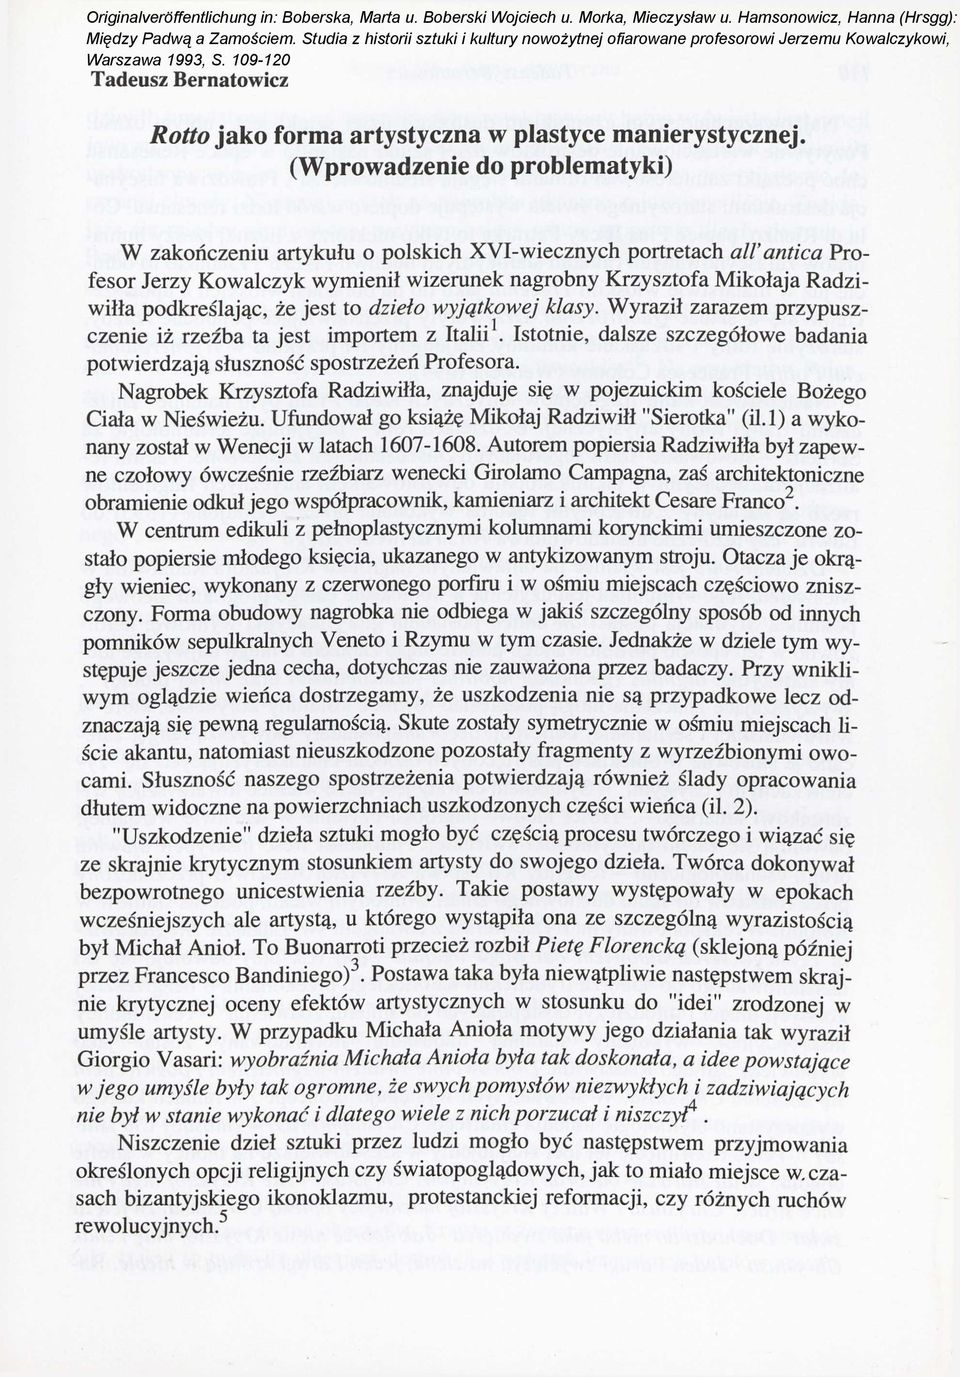 (Wprowadzenie do problematyki) W zakończeniu artykułu o polskich XVI-wiecznych portretach allantica Profesor Jerzy Kowalczyk wymienił wizerunek nagrobny Krzysztofa Mikołaja Radziwiłła podkreślając,